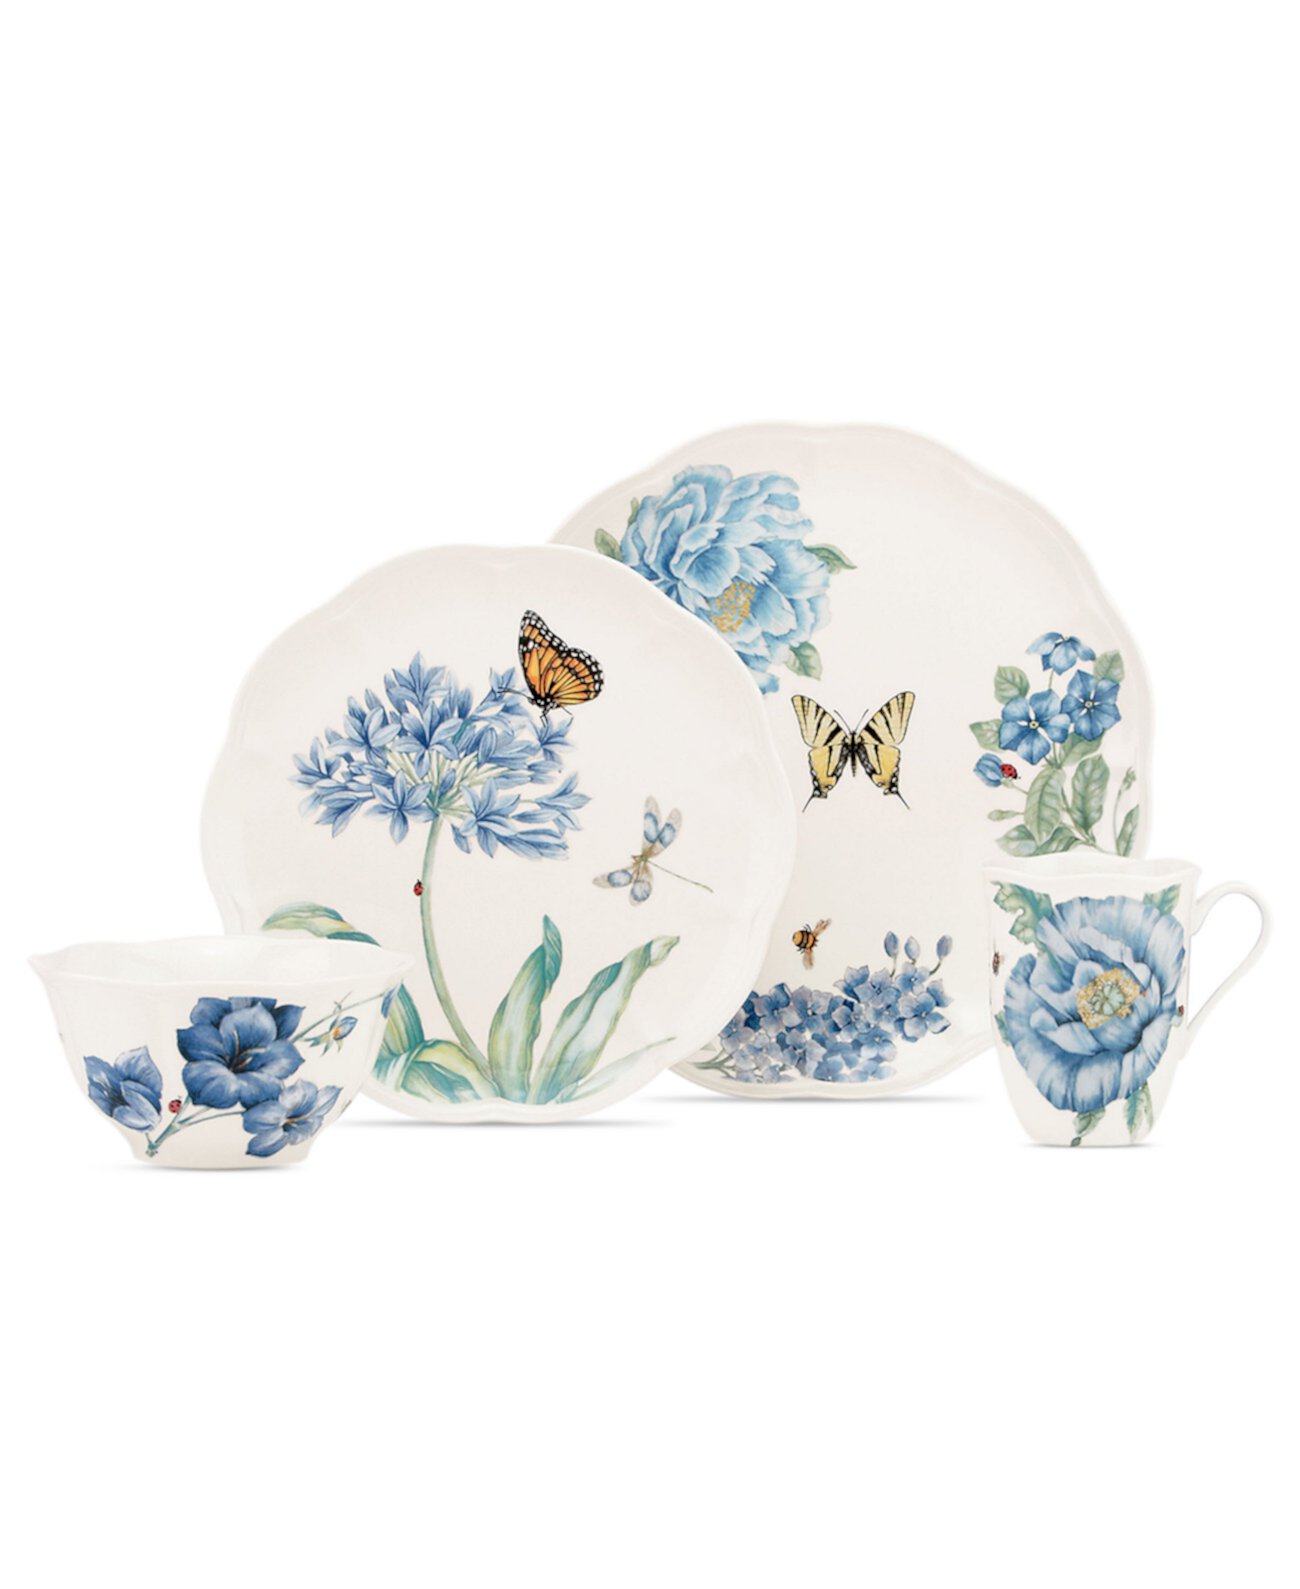 Посуда, Butterfly Meadow Blue, 4 шт. Lenox